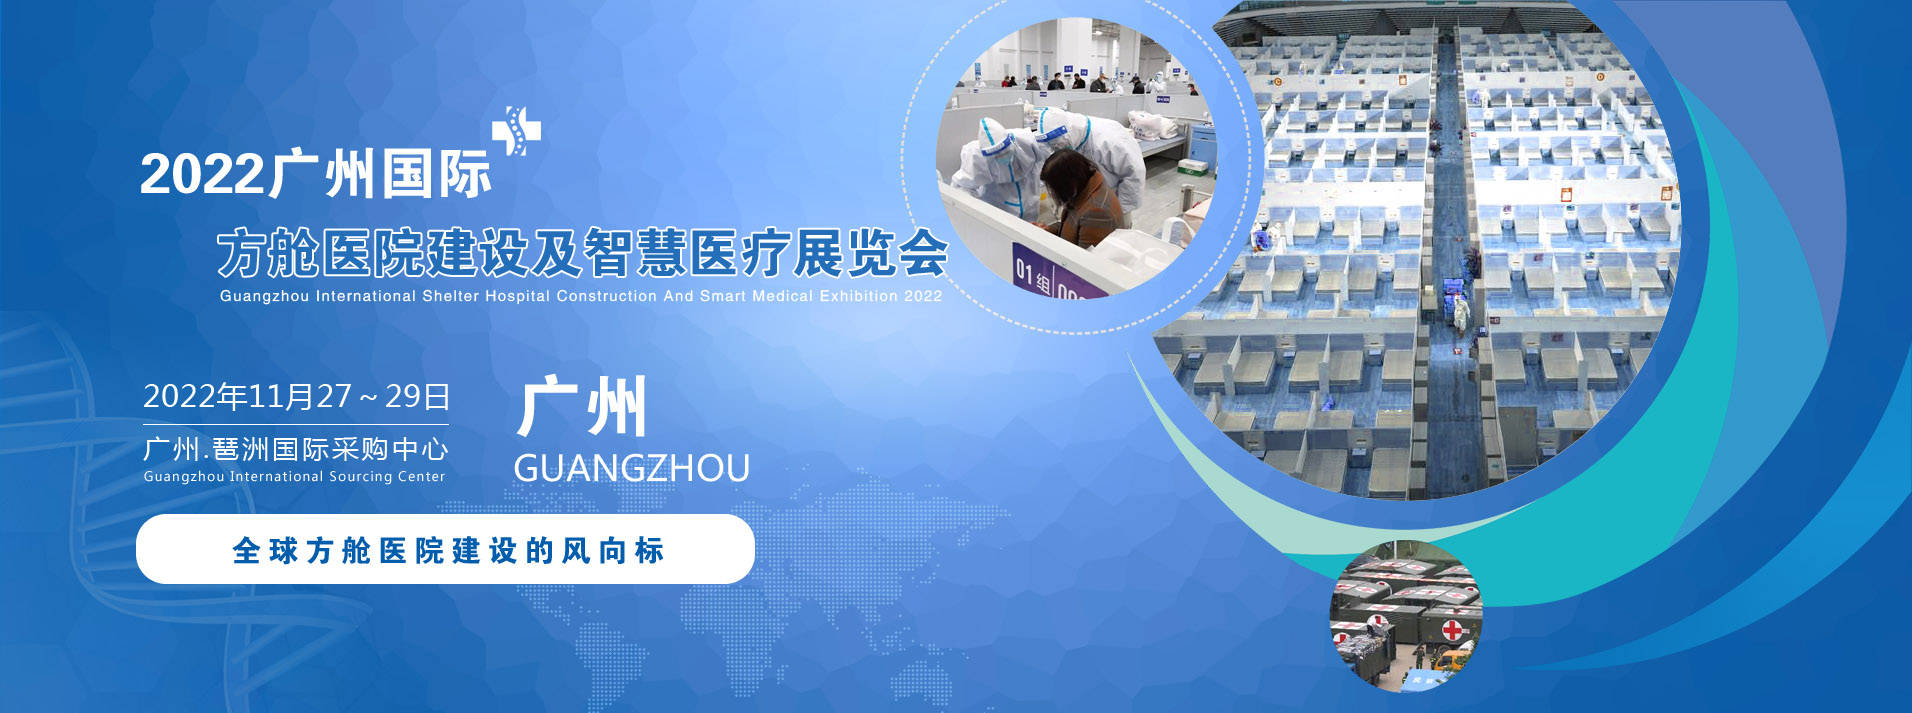 广州展会搭建商推荐2022广州国际方舱医院建设及智慧医疗设计展览会(图1)